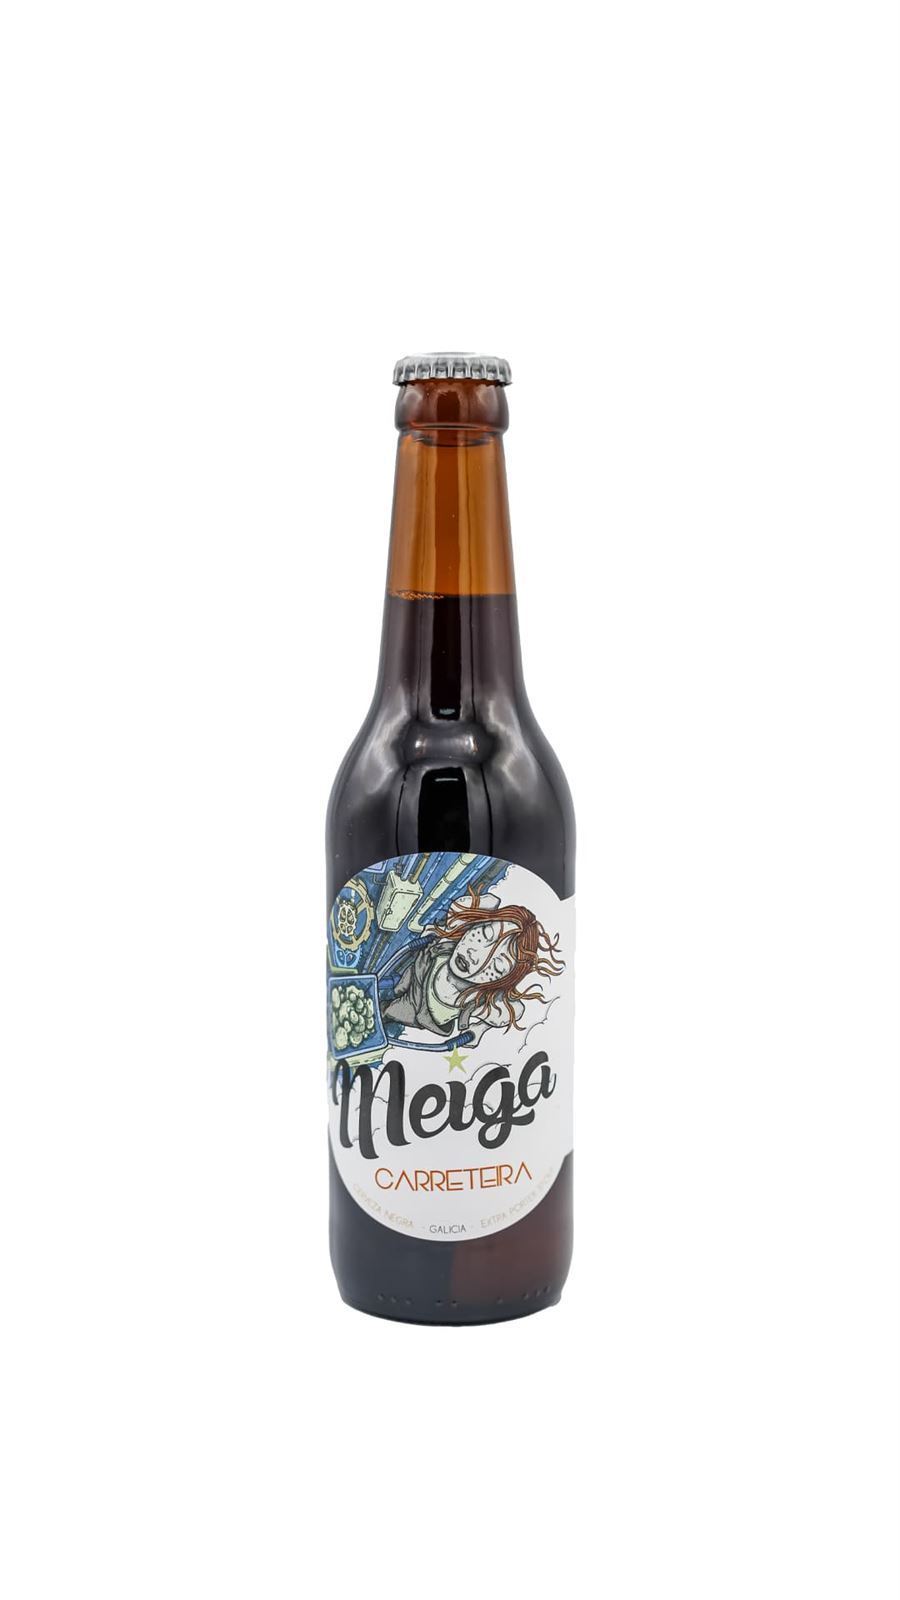 Cerveza Meiga Carreteira (Extra Porter Stout) - Imagen 1